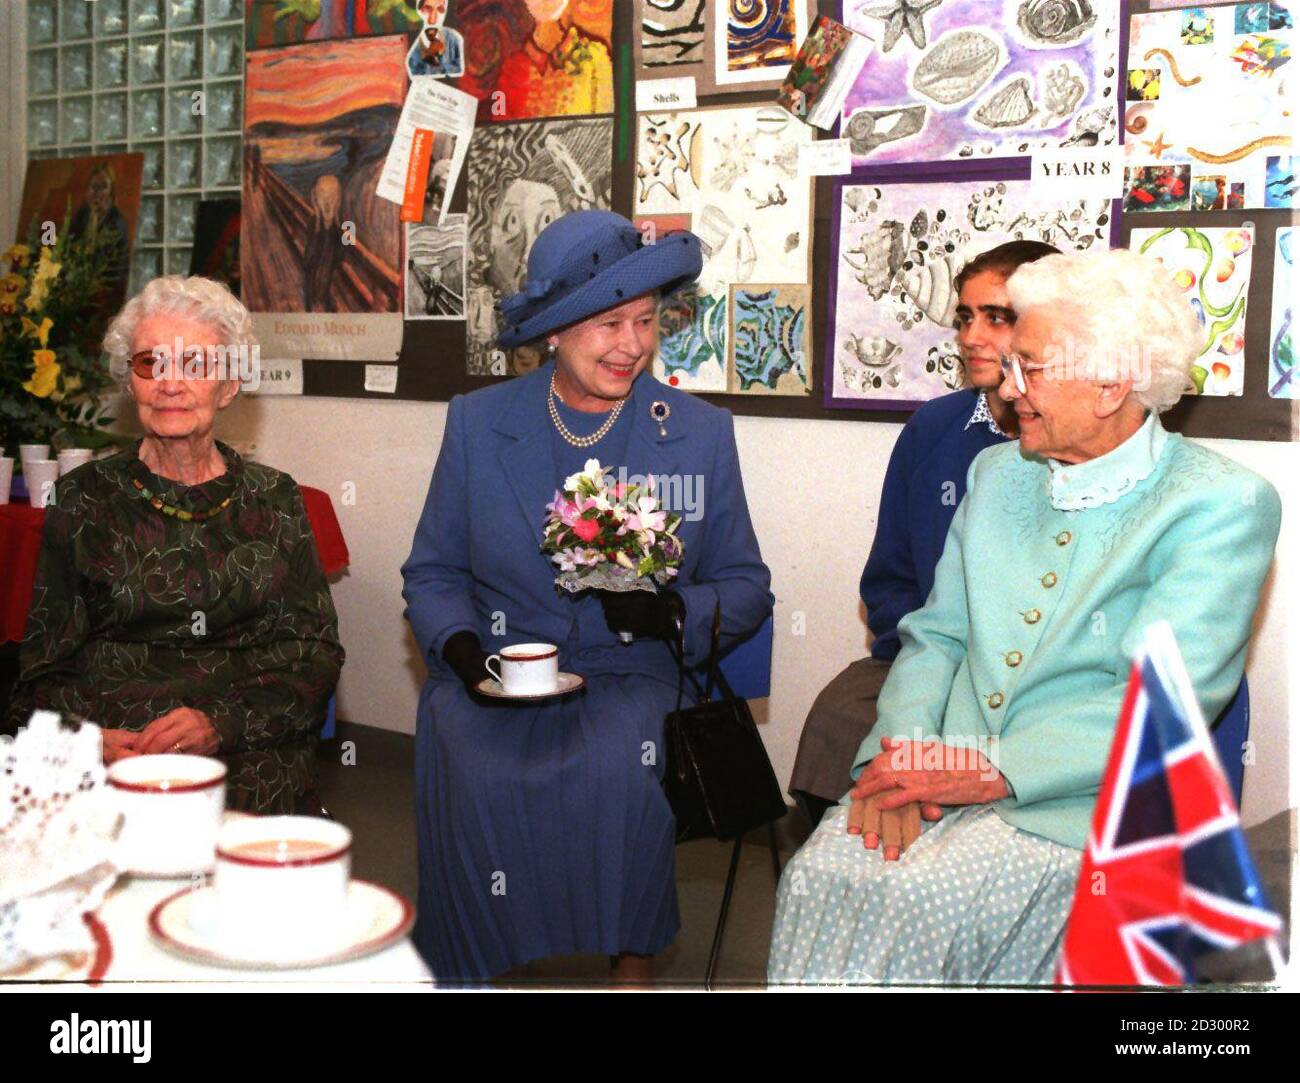 La reine Elizabeth II (au centre) a pris le thé avec d'anciens élèves, Dorothy Cowtan (à gauche), 100 ans, et Anne Scott, lors d'une visite à l'école de l'hôpital Graycoat pour souligner son centenaire aujourd'hui (mercredi). Photos PA (Sun Rota Pic) Banque D'Images